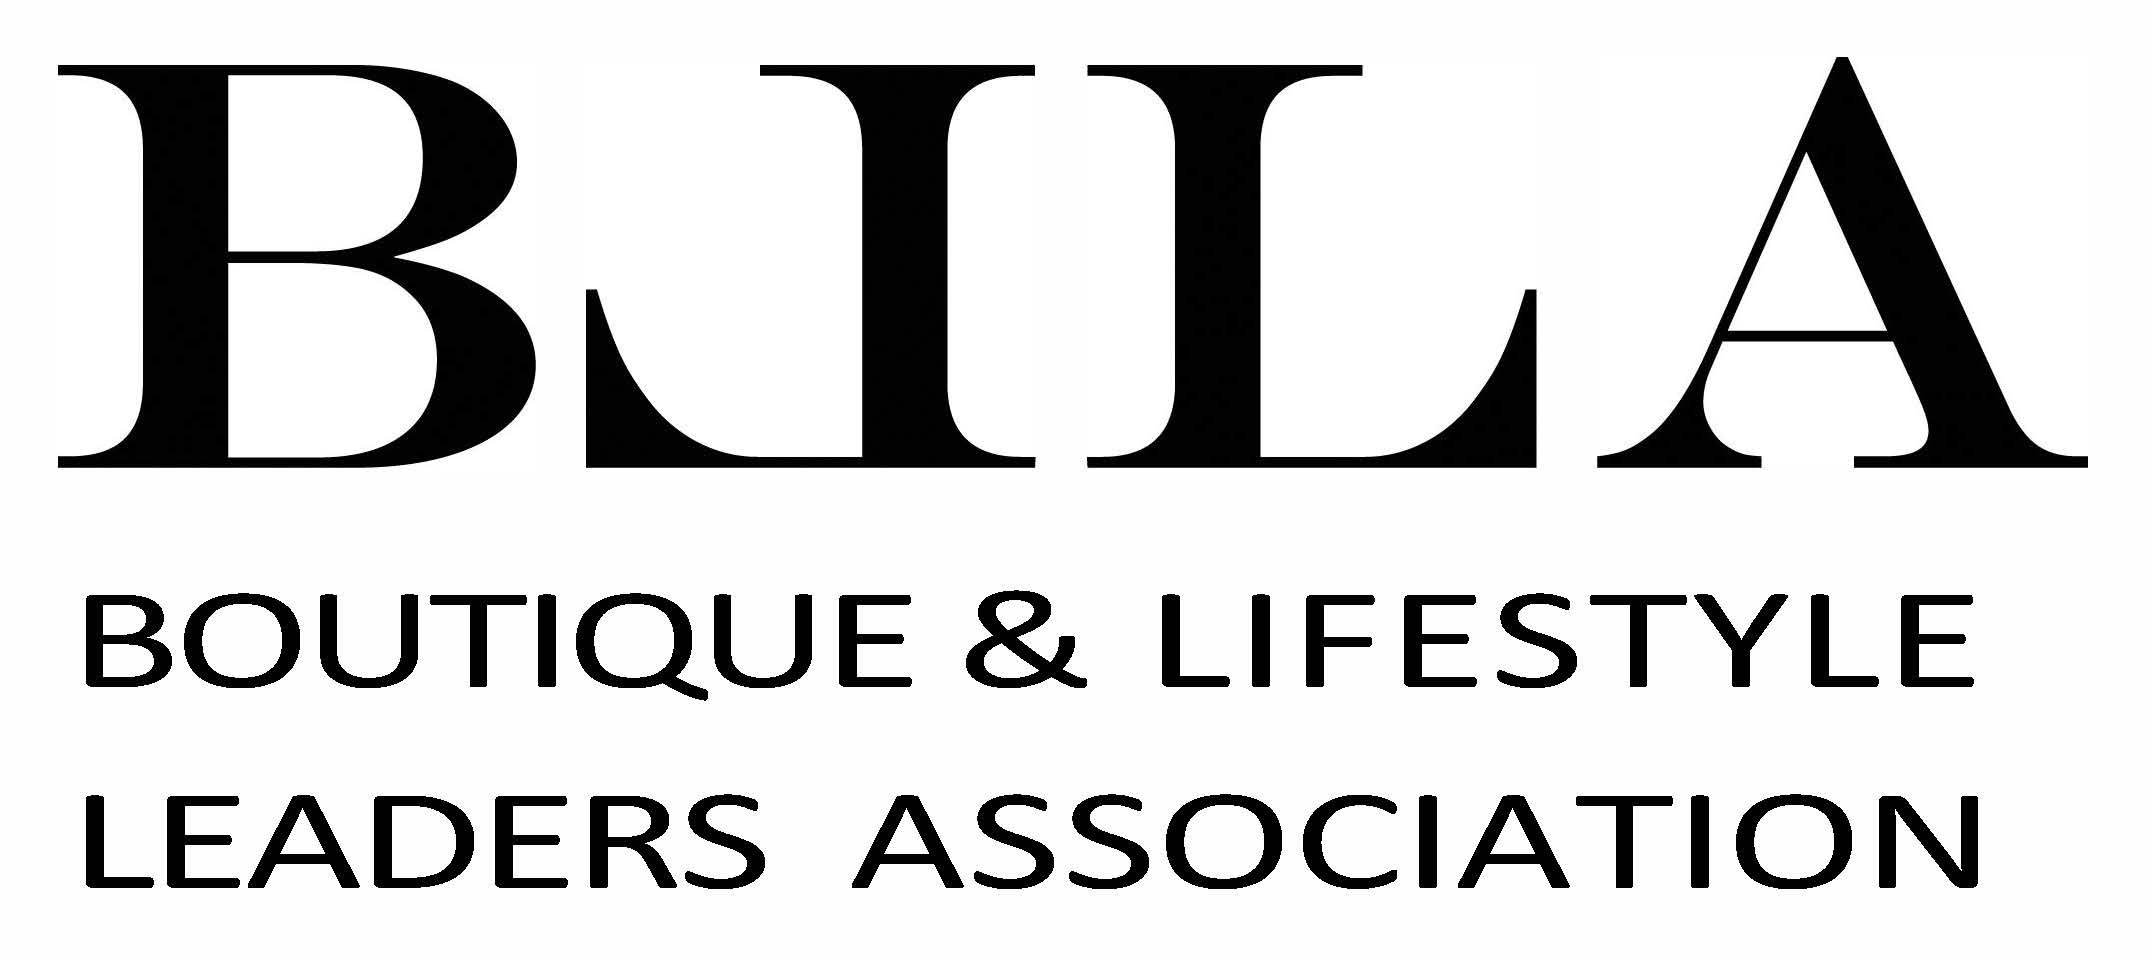 Boutique & Lifestyle Leaders Association (BLLA)